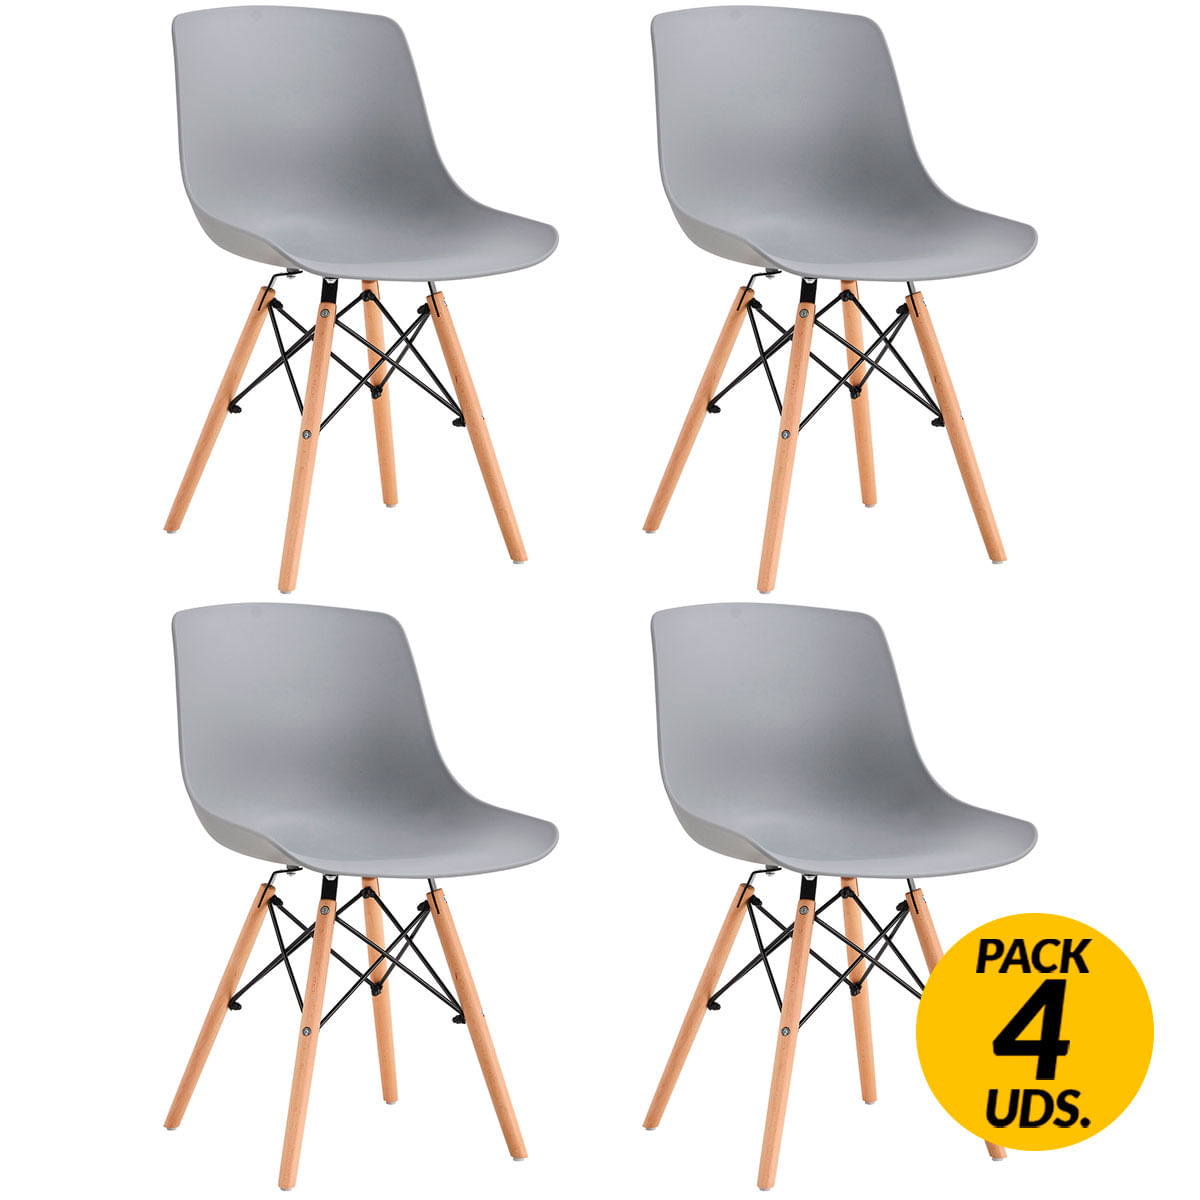 Adec - Adec Pack de 4 sillas de comedor Jeff diseño nórdico